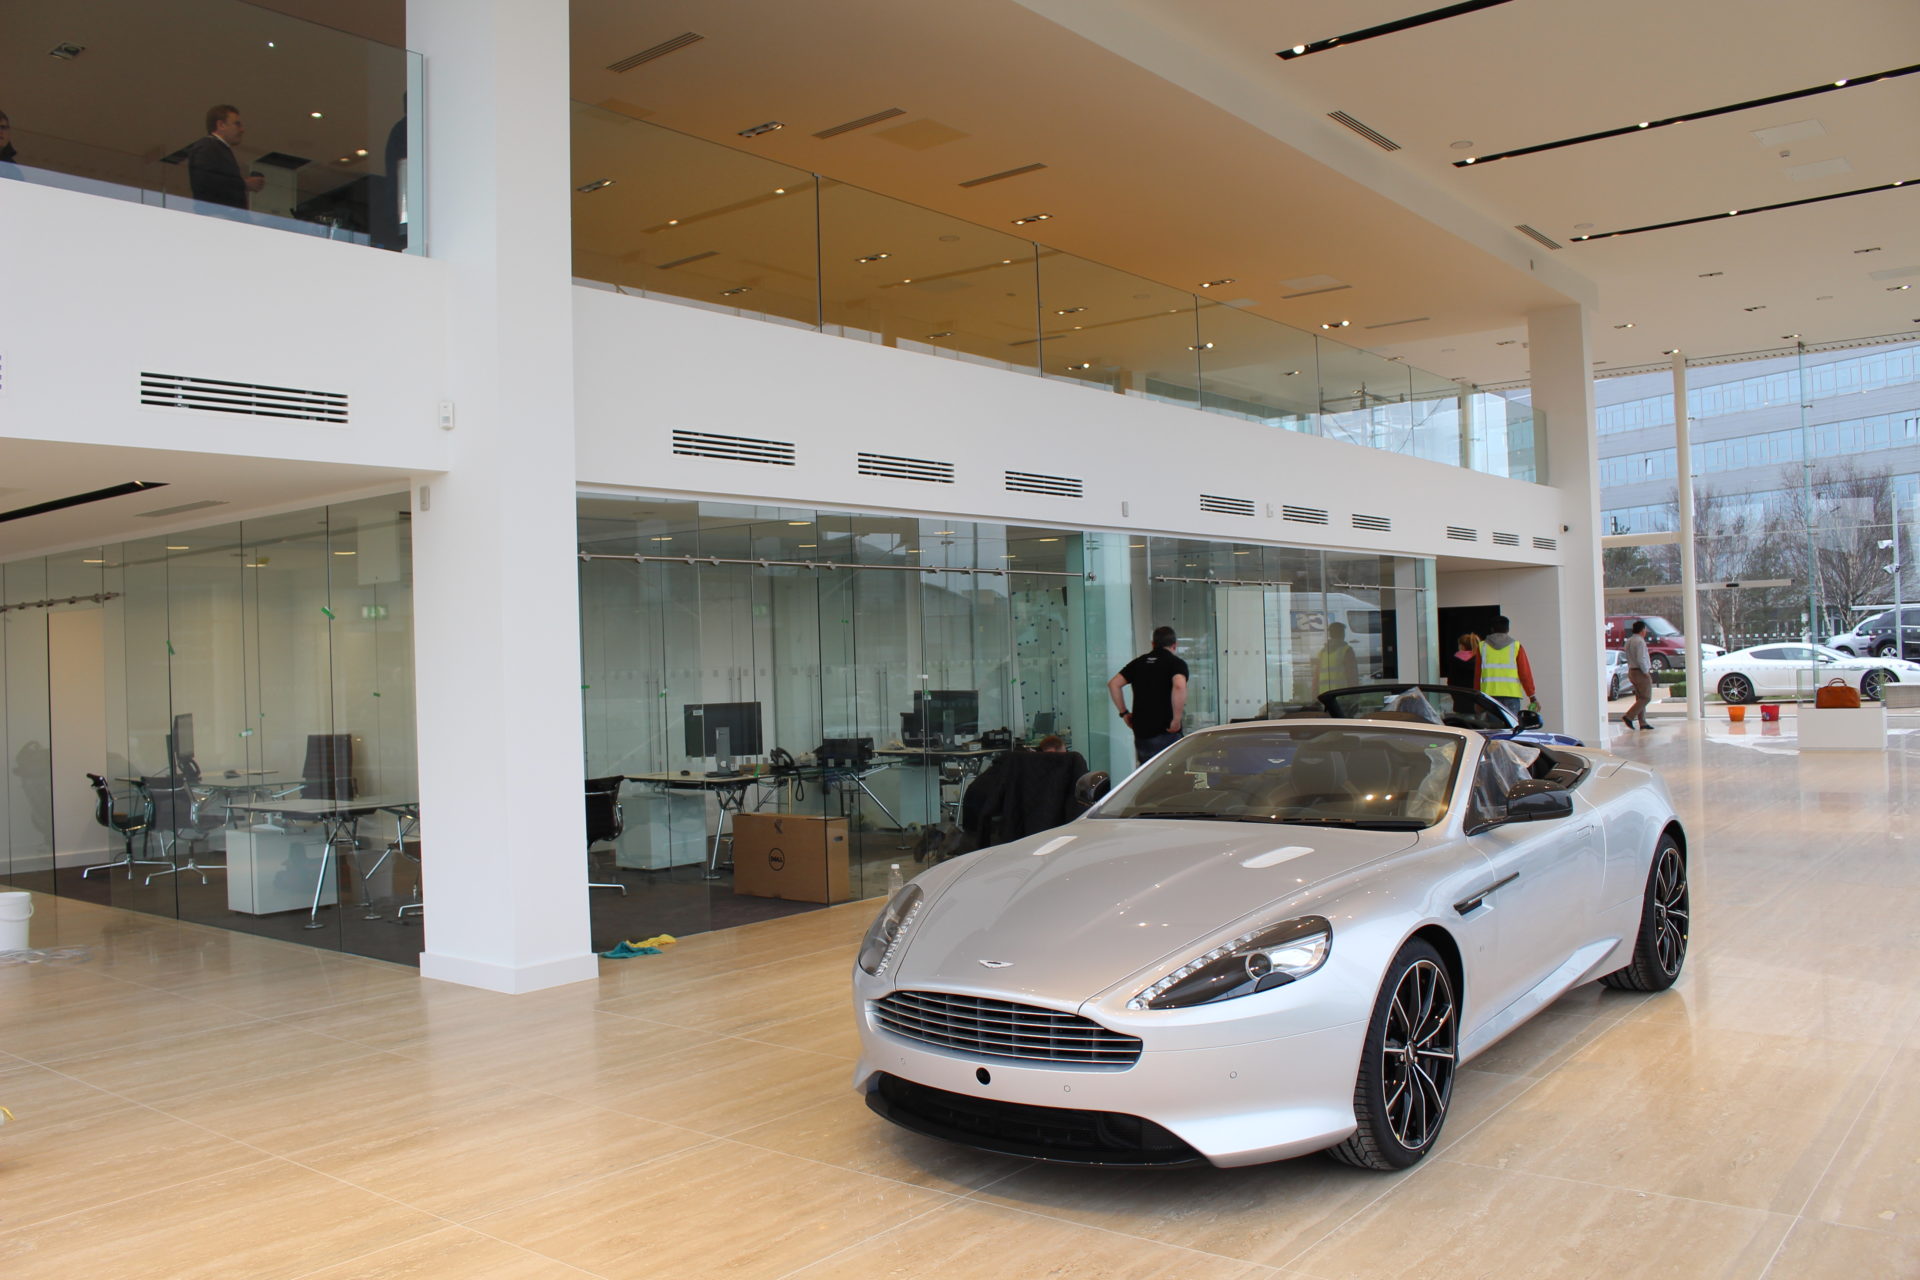 Aston Martin windows